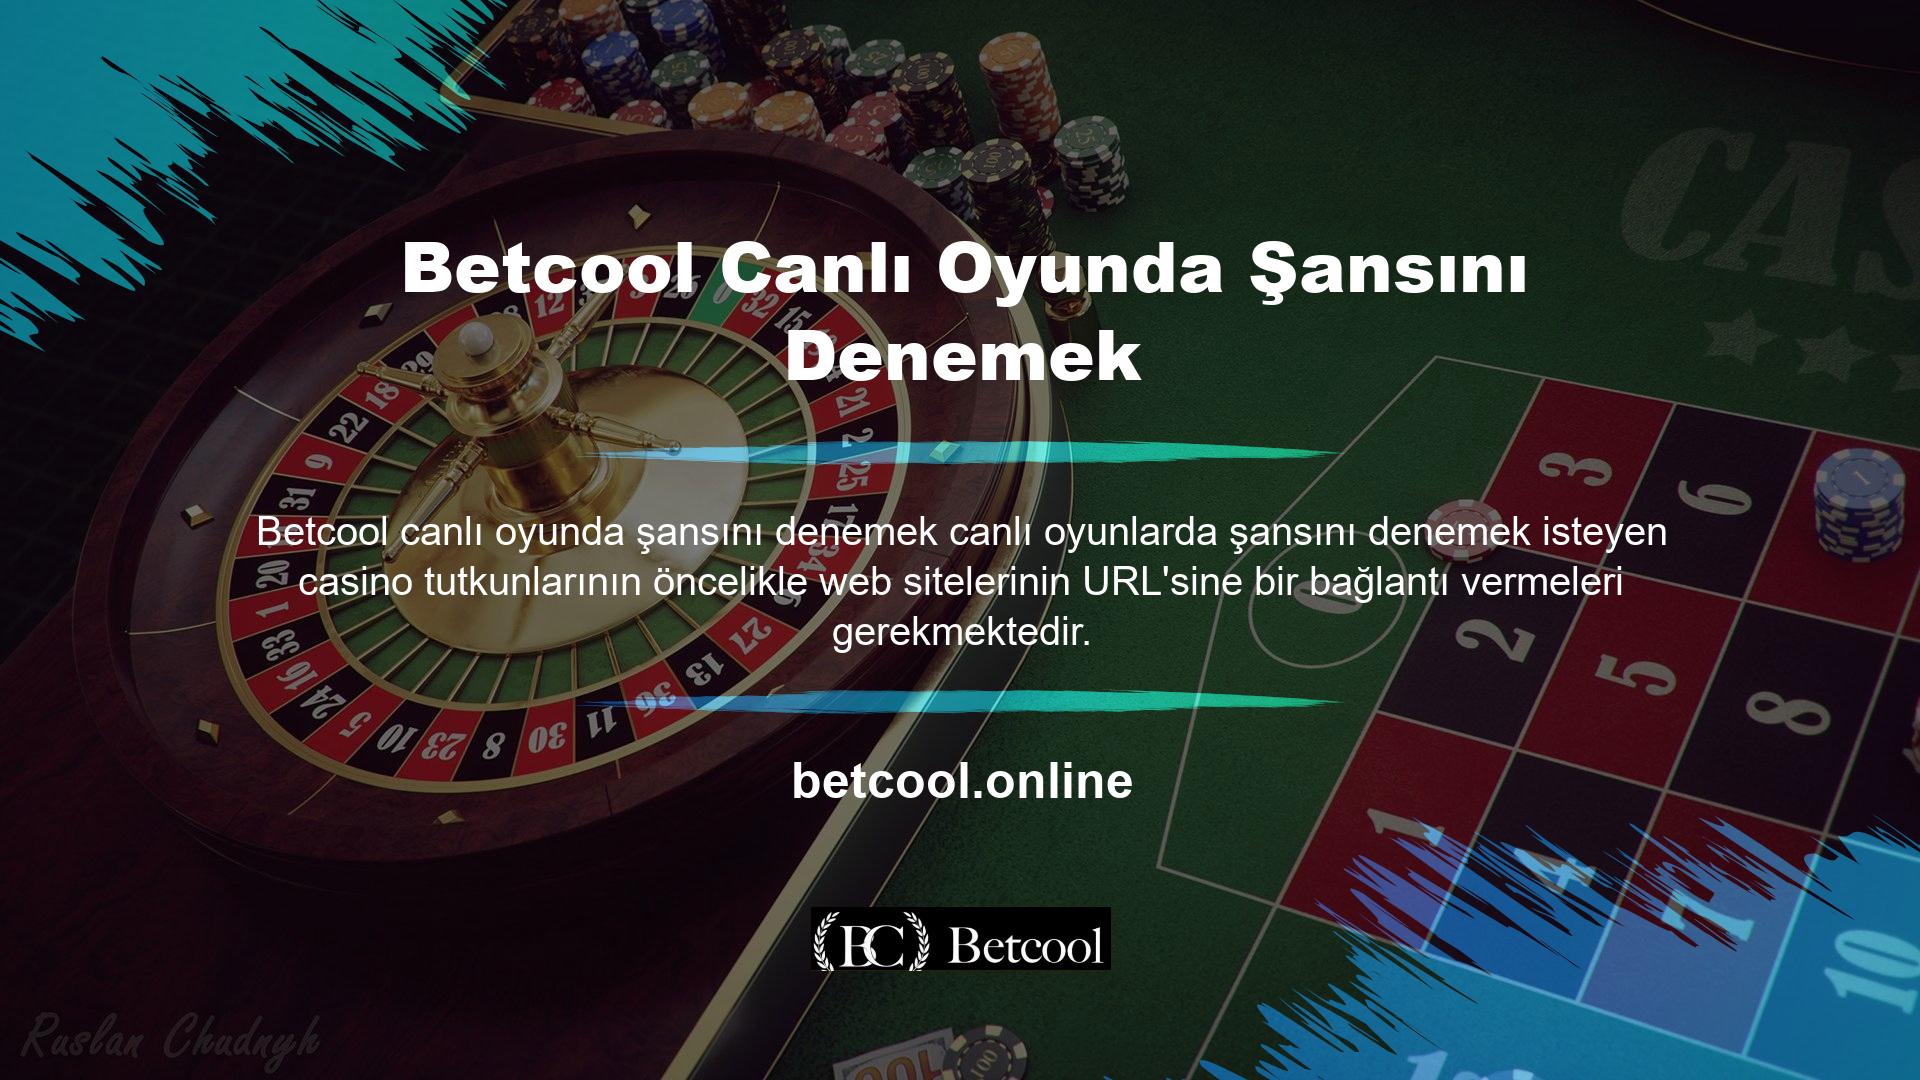 Tüm canlı casino oyunları sitenin online adresinde mevcuttur